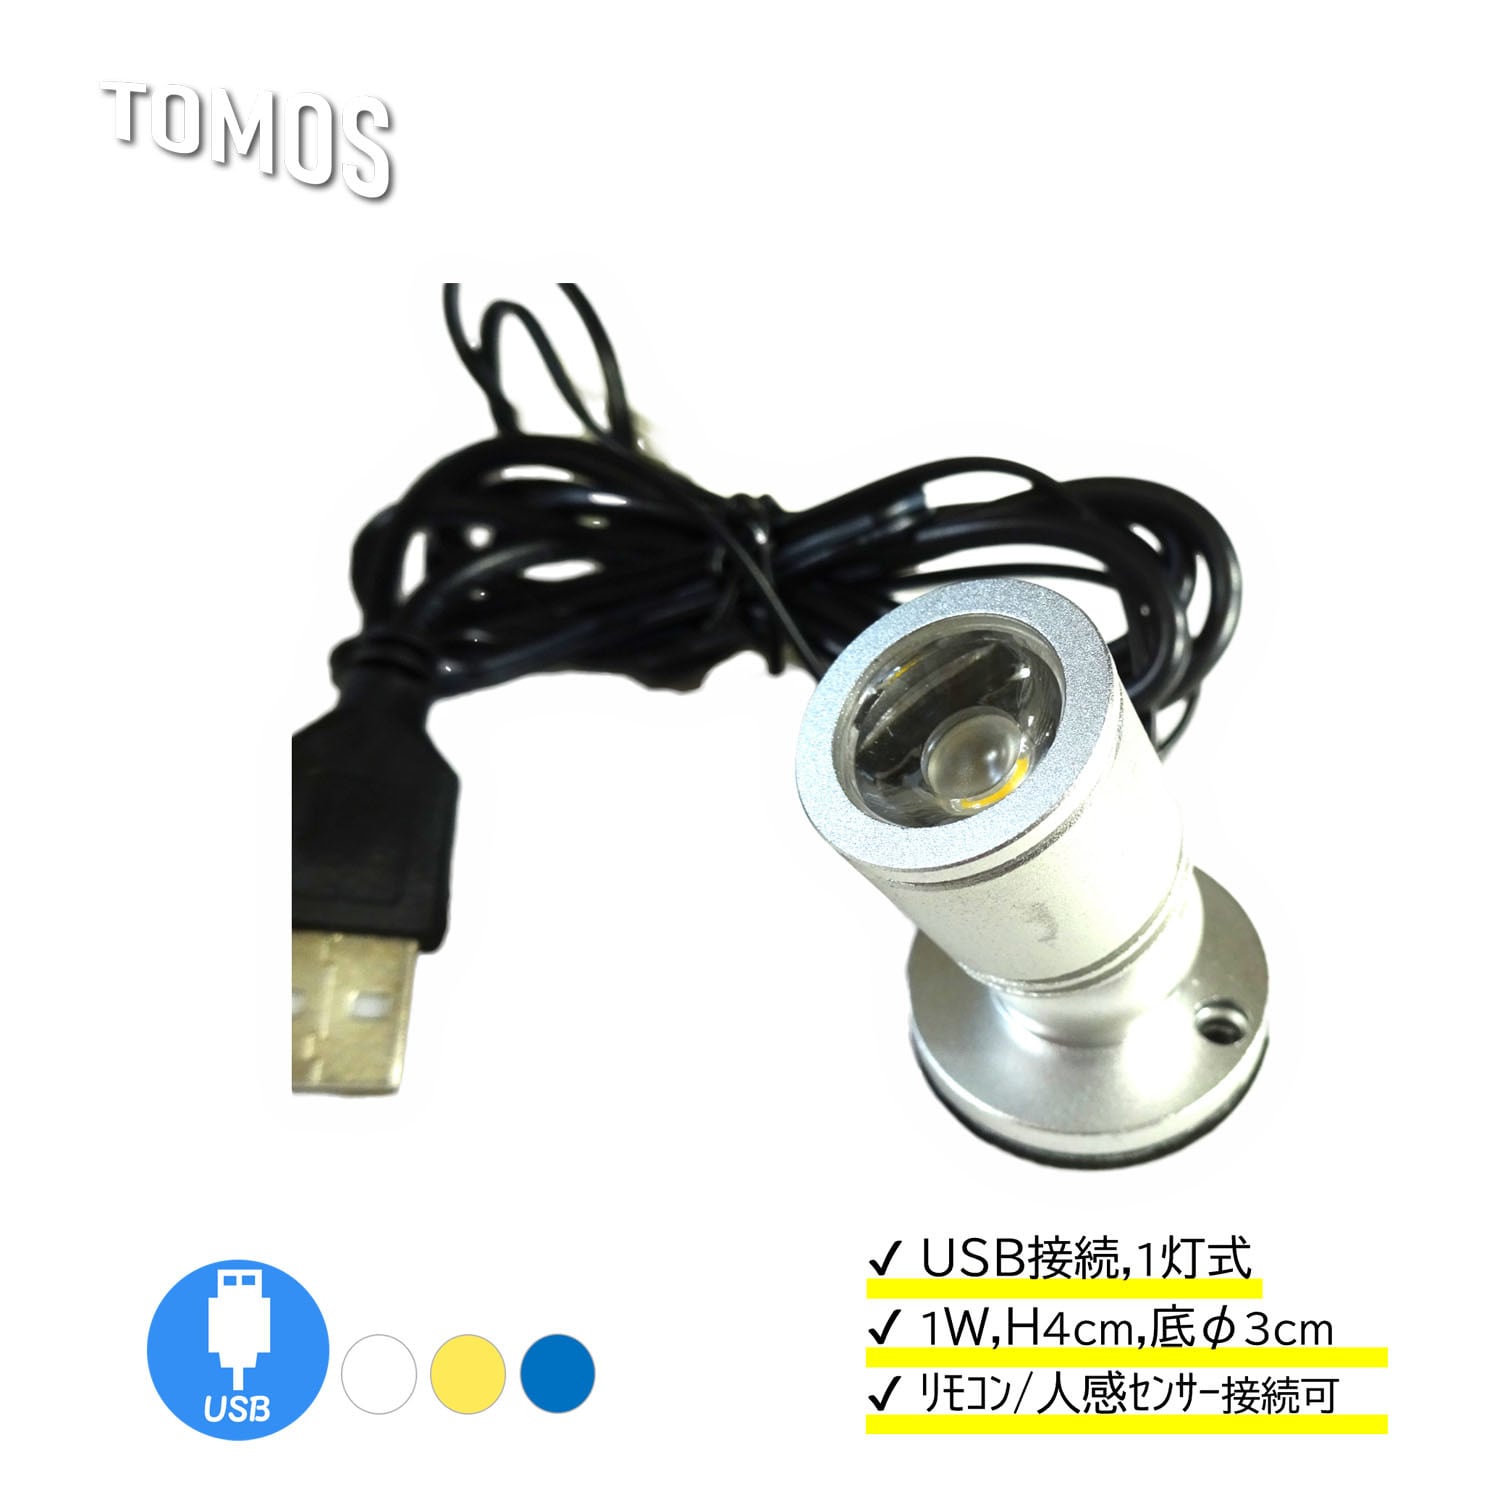 大人気の LED 卓上 ミニ スポットライト マメスポ 4cm 1灯式 USB式 フィギュア 模型 ライトアップ 照明用